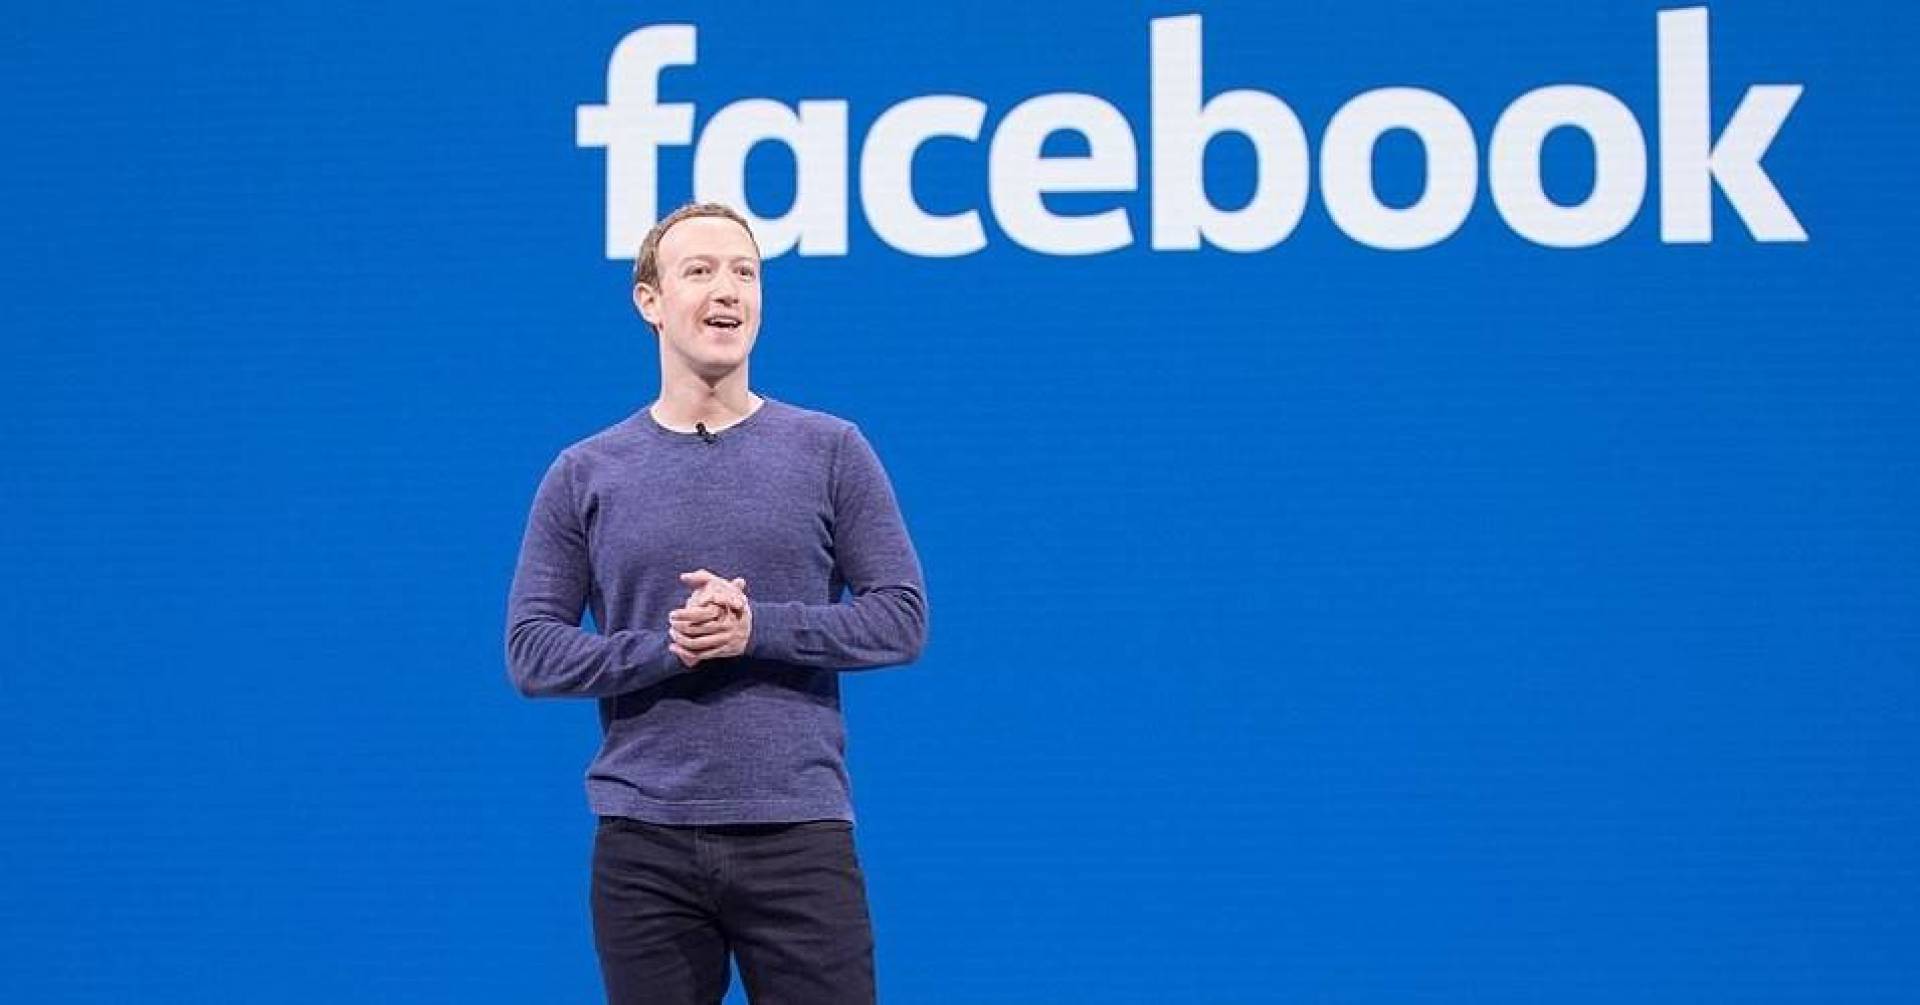 فيسبوك" تدفع 650 مليون دولار في أكبر قضية انتهاك خصوصية